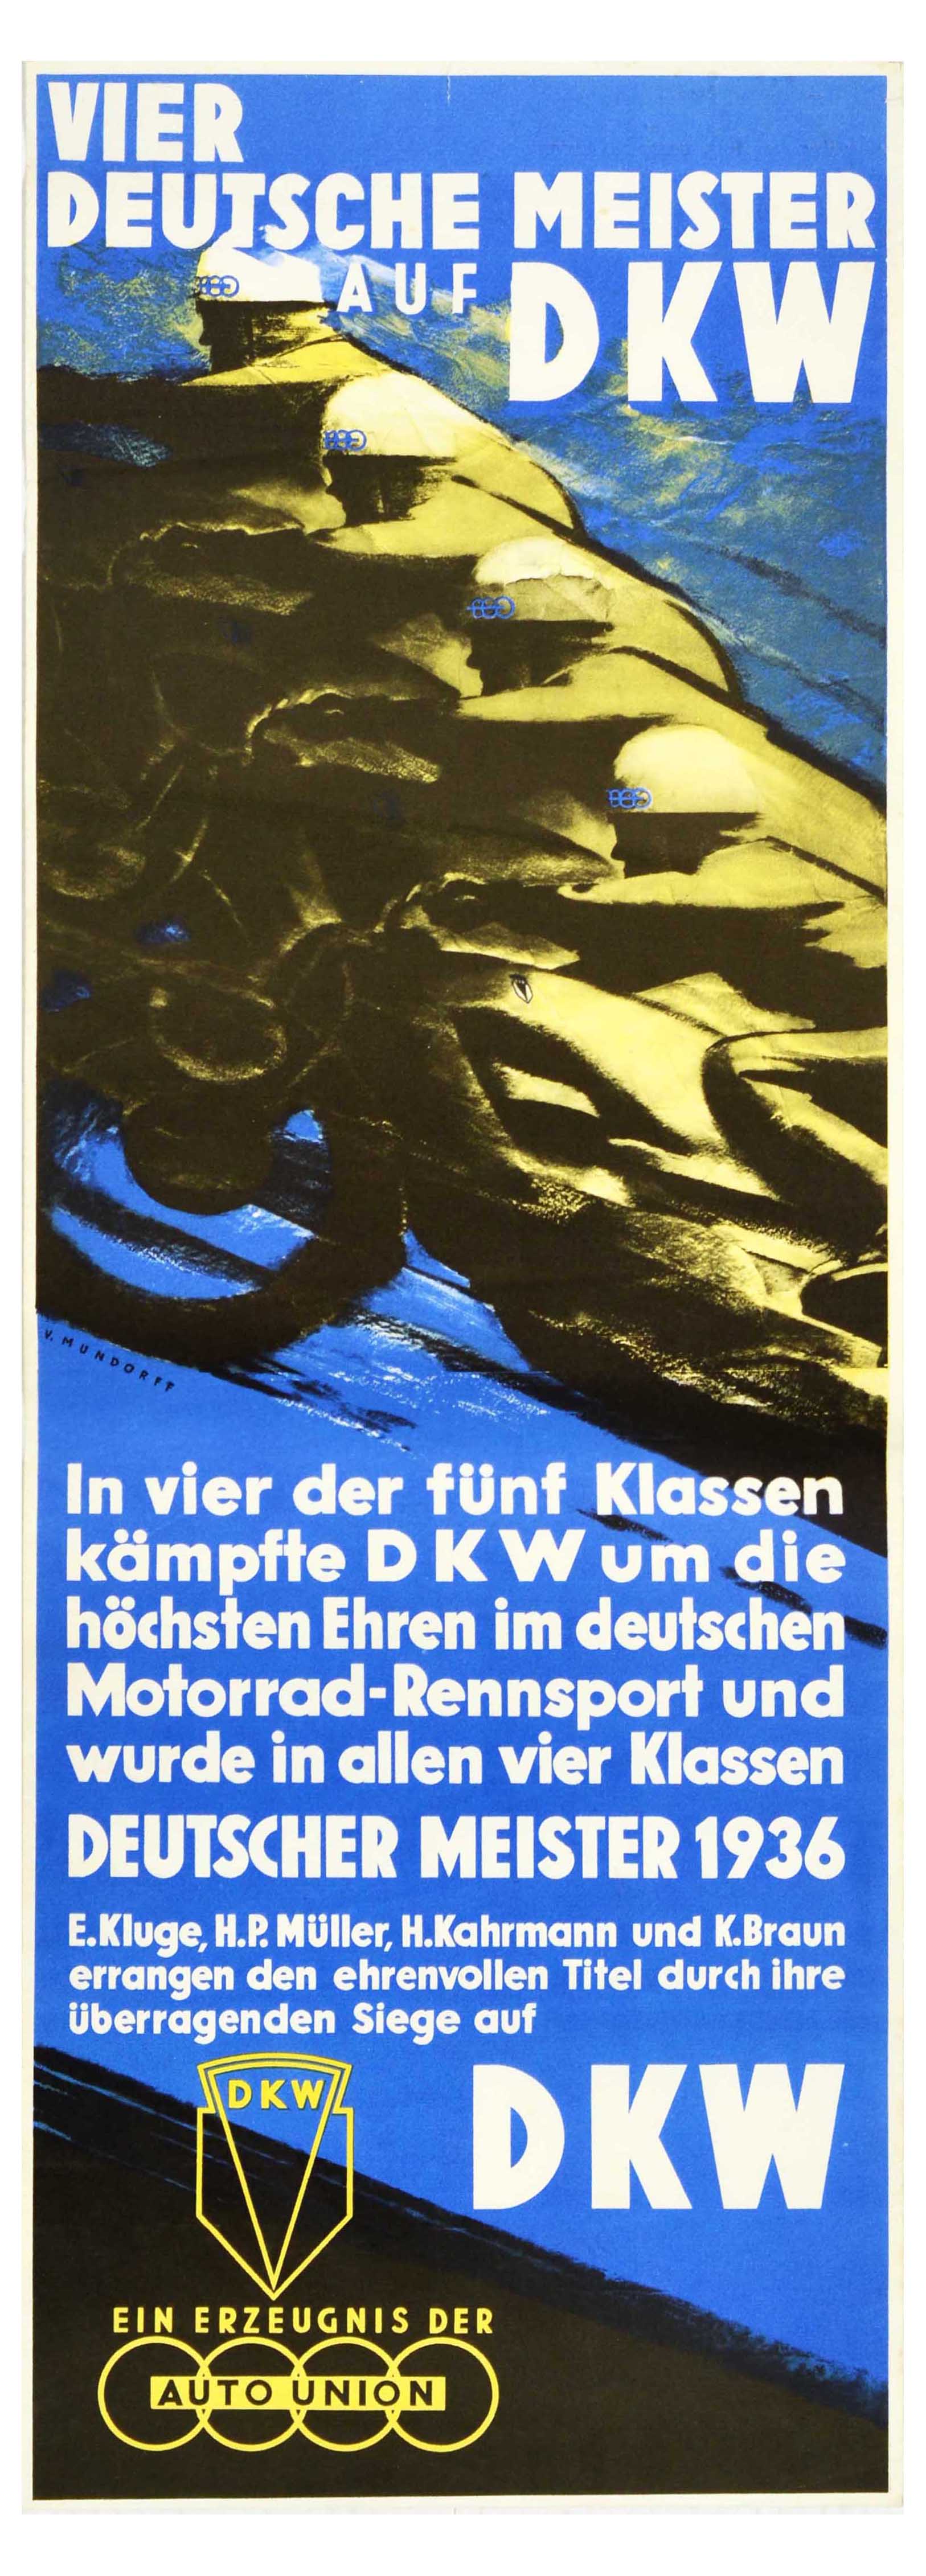 Sport Poster Motorcycle Racing DKW Art Deco German Championships